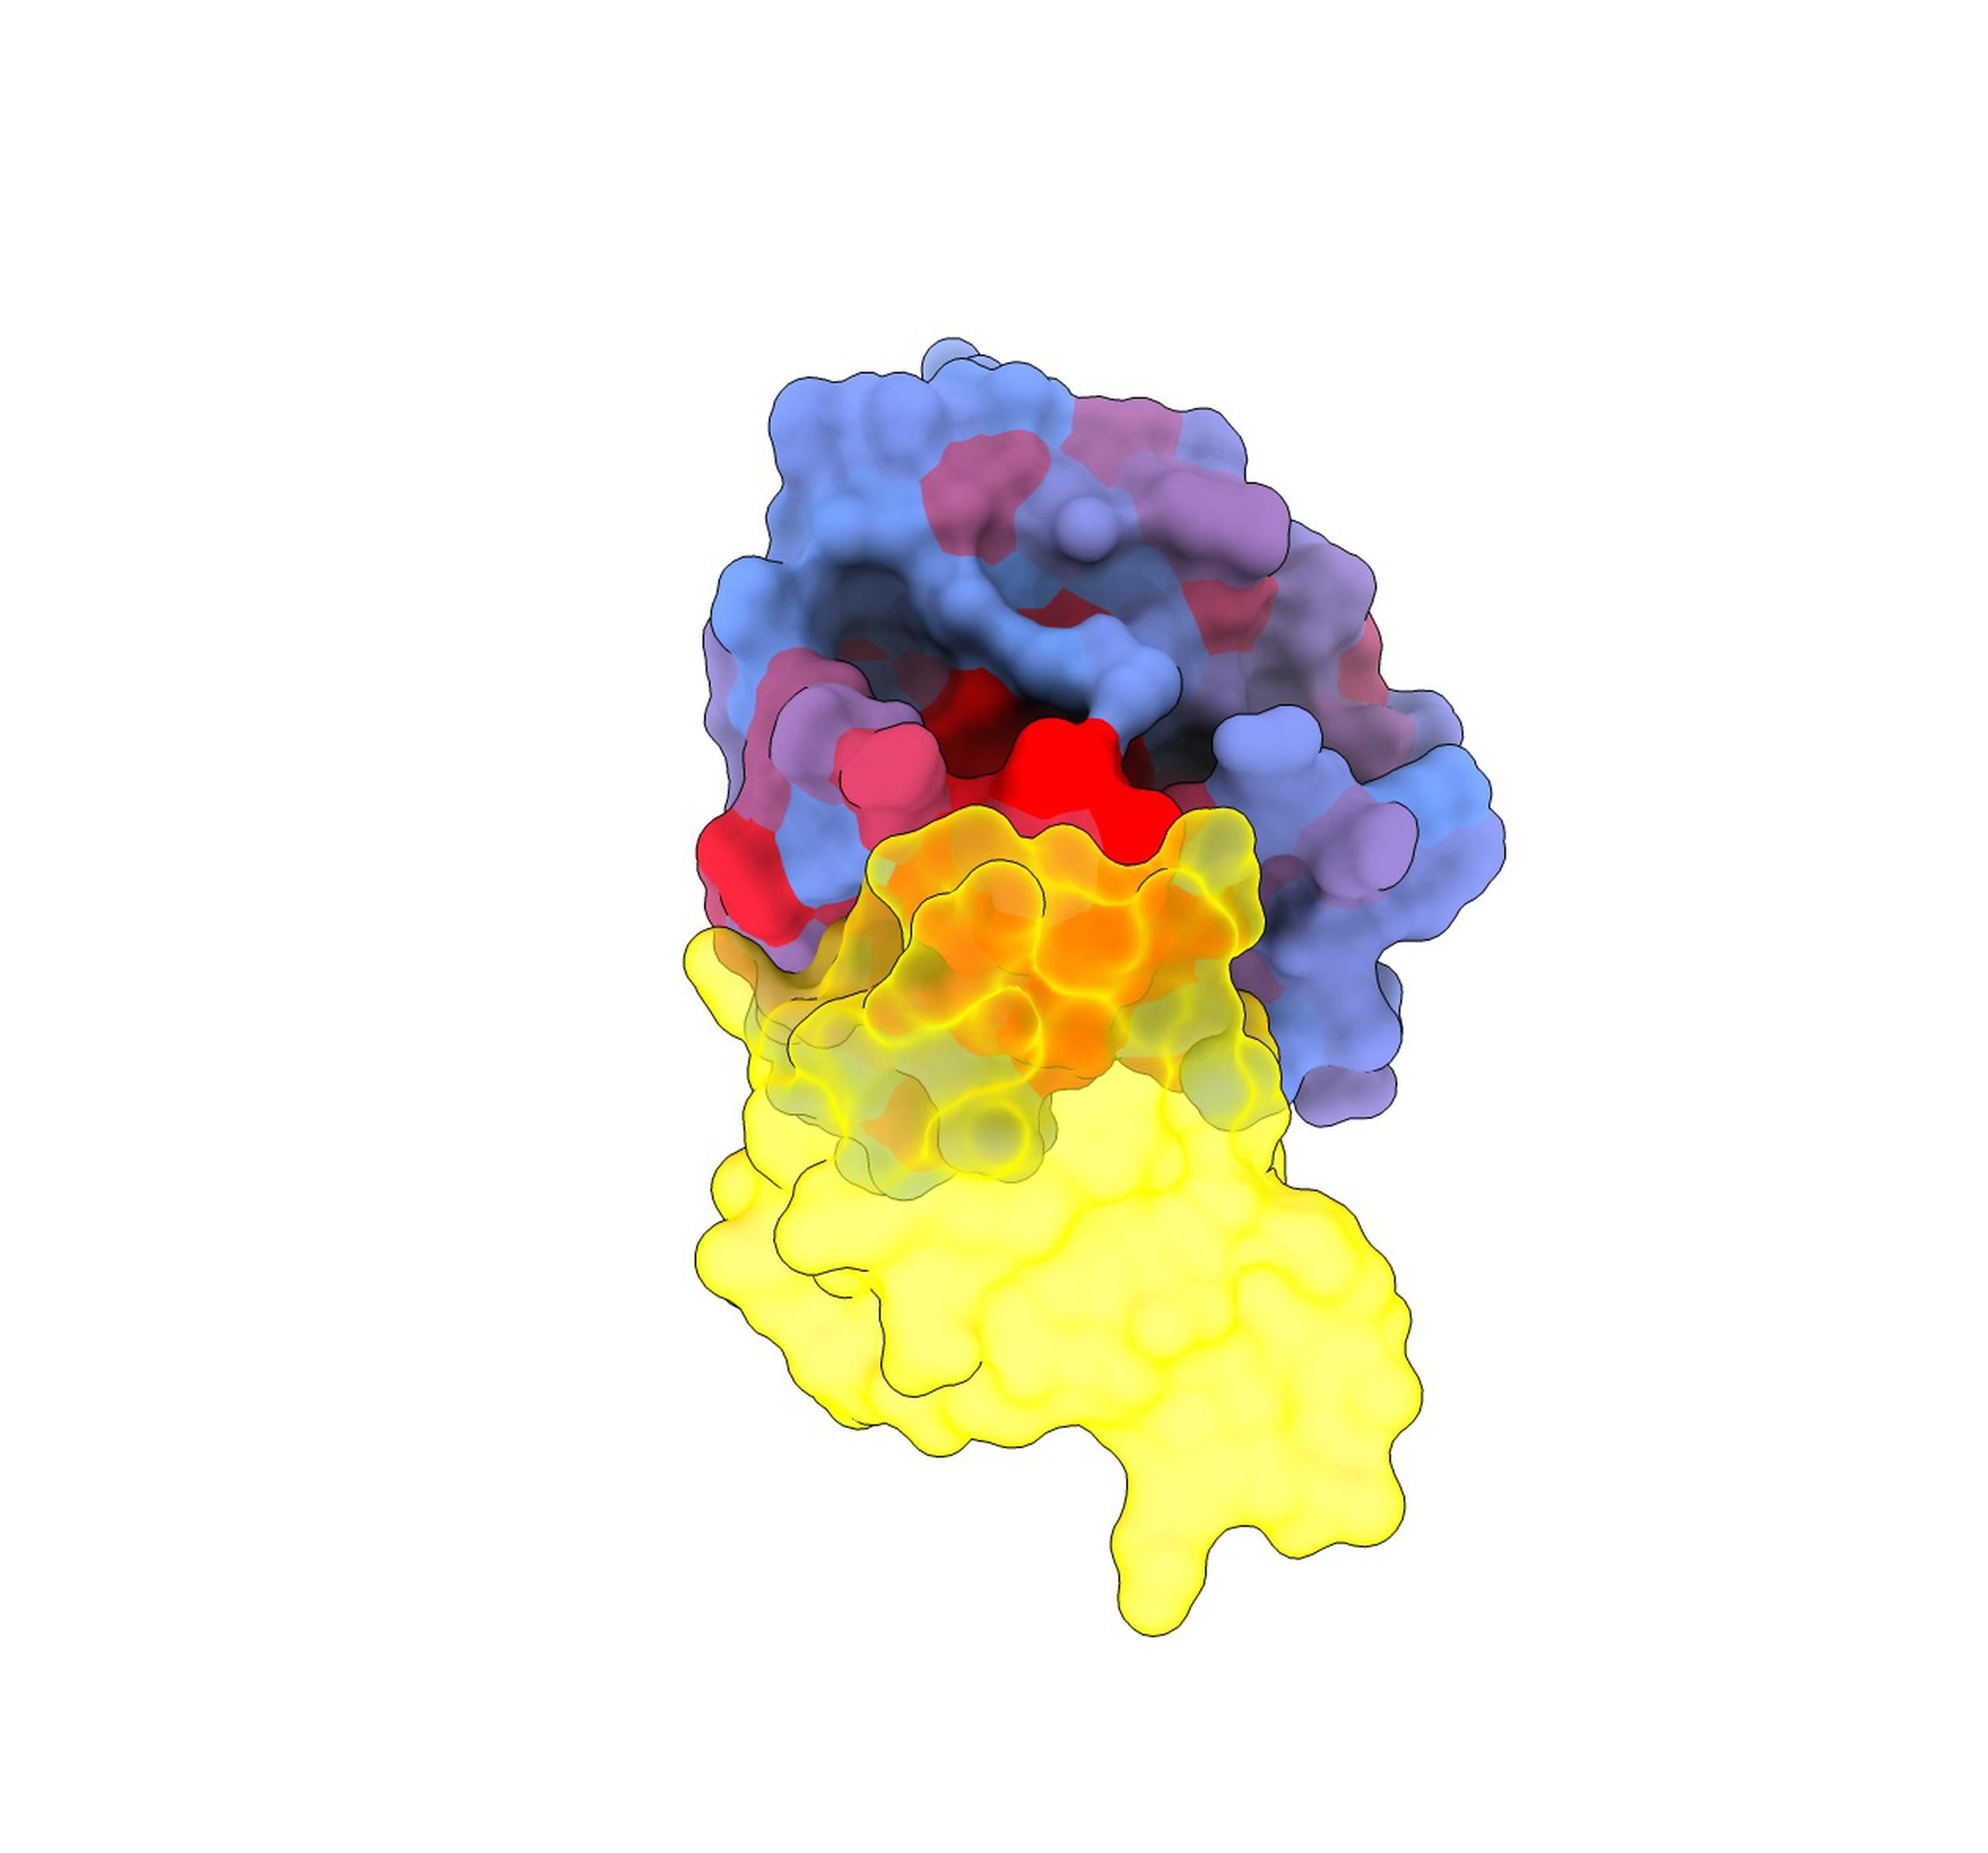 Imagen tridimensional que muestra la proteína KRAS (azul) interactuando con otra proteína, RAF1 (amarillo). Crédito: Weng, Faure y Escobedo/Centro de Regulación Genómica
